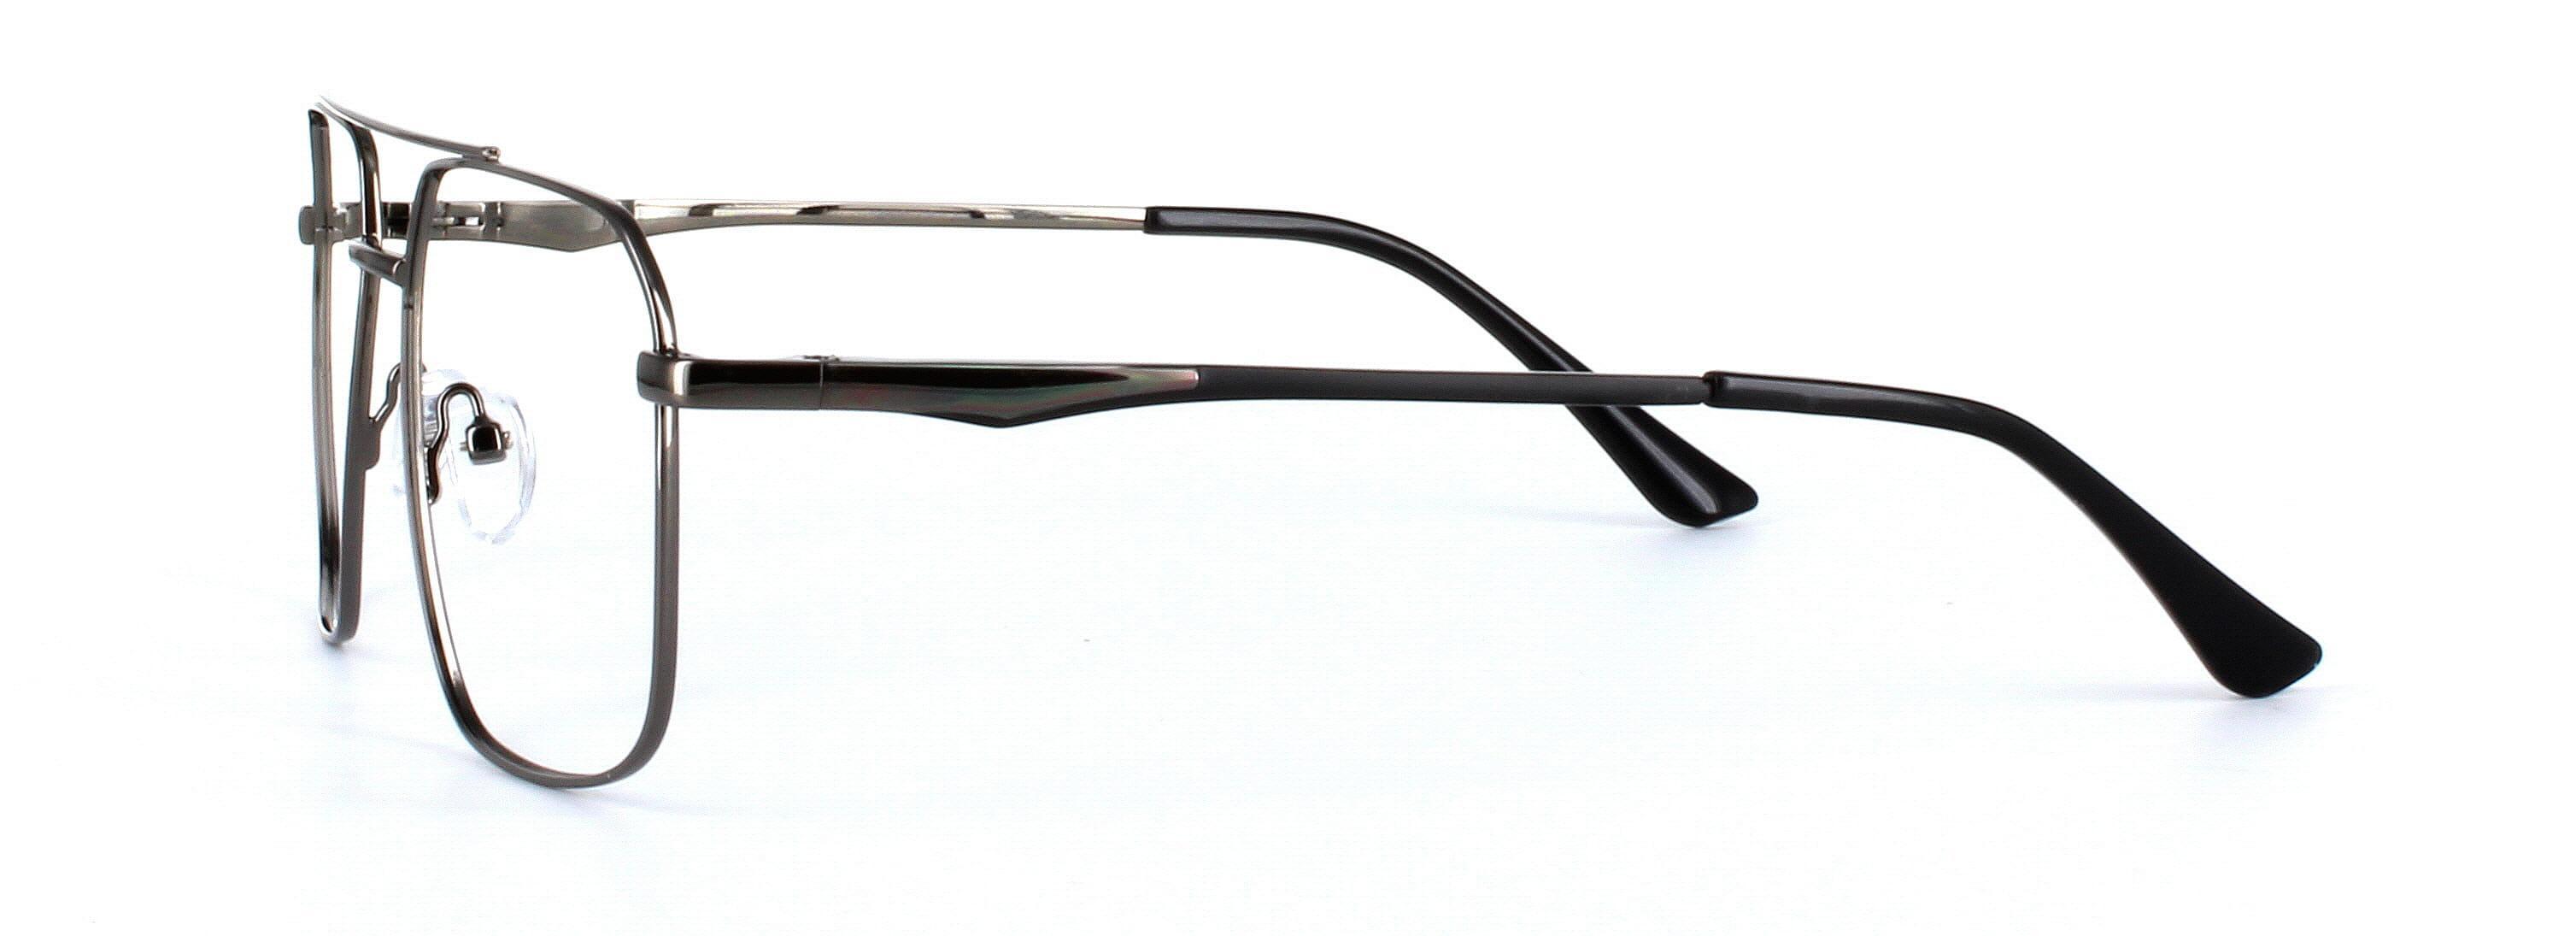 Caludon Gunmetal Full Rim Aviator Metal Glasses - Image View 2